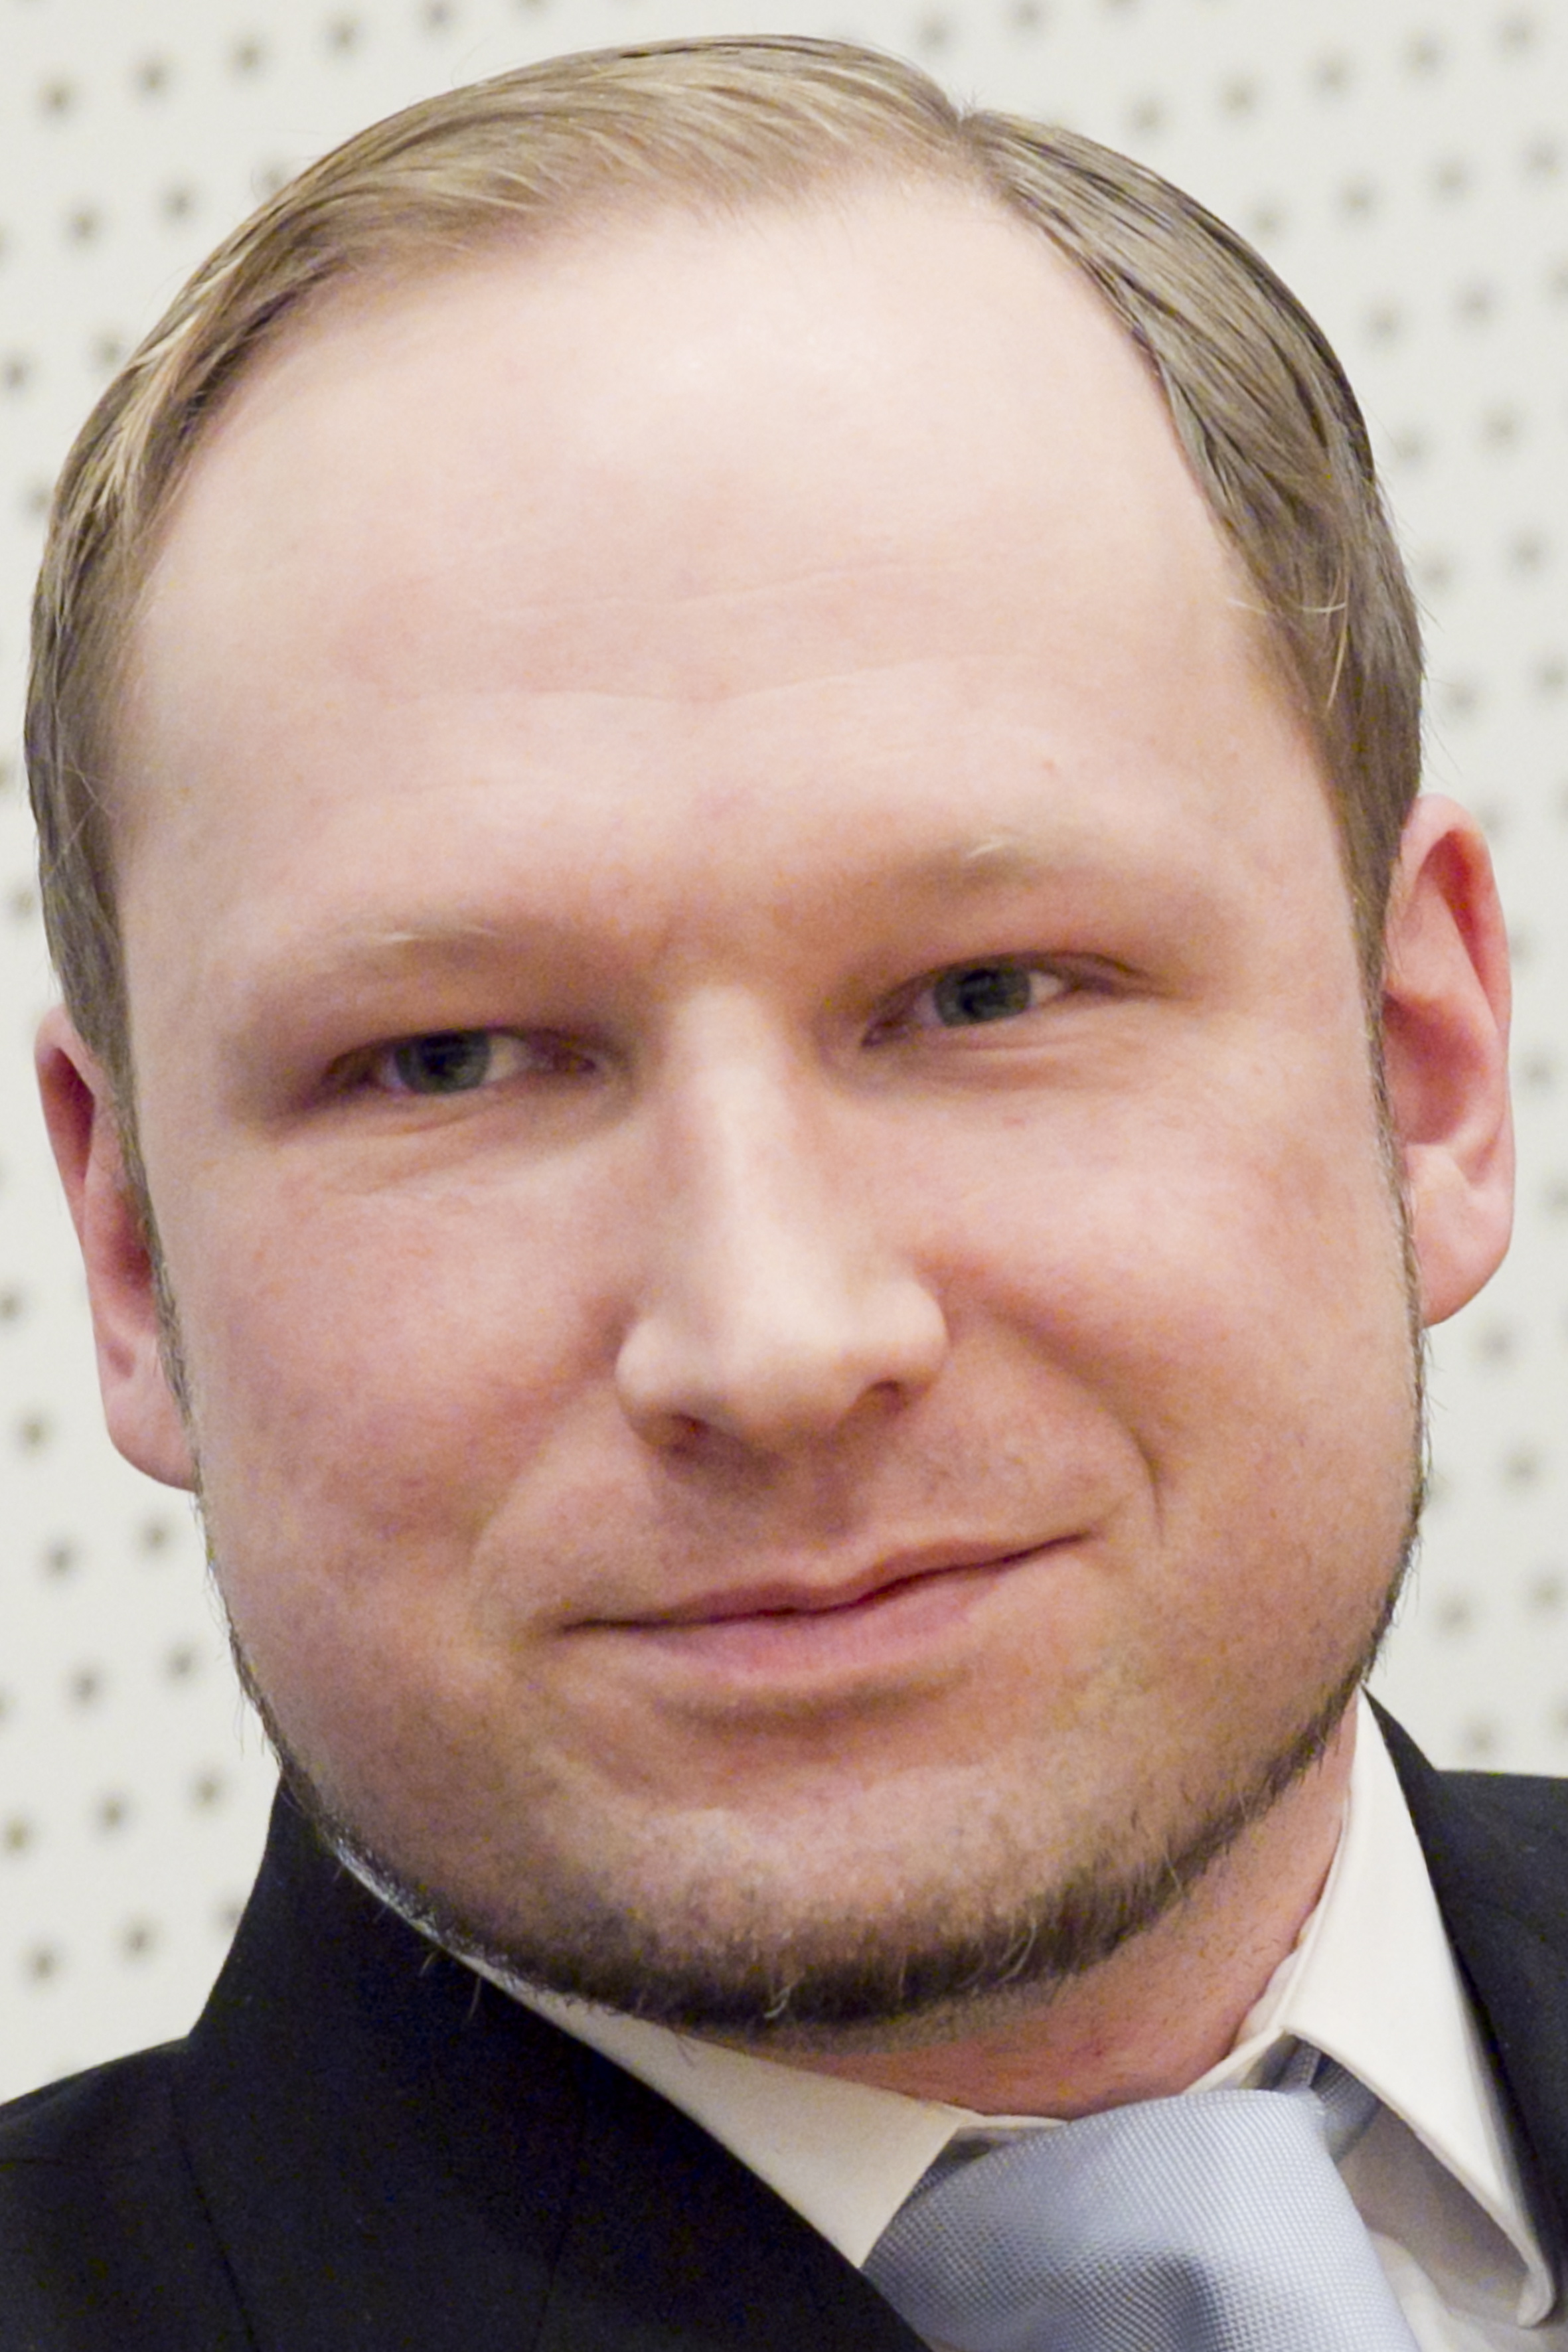 Anders Behring Breivik har själv kallat den första undersökningen för "den totala förnedringen".